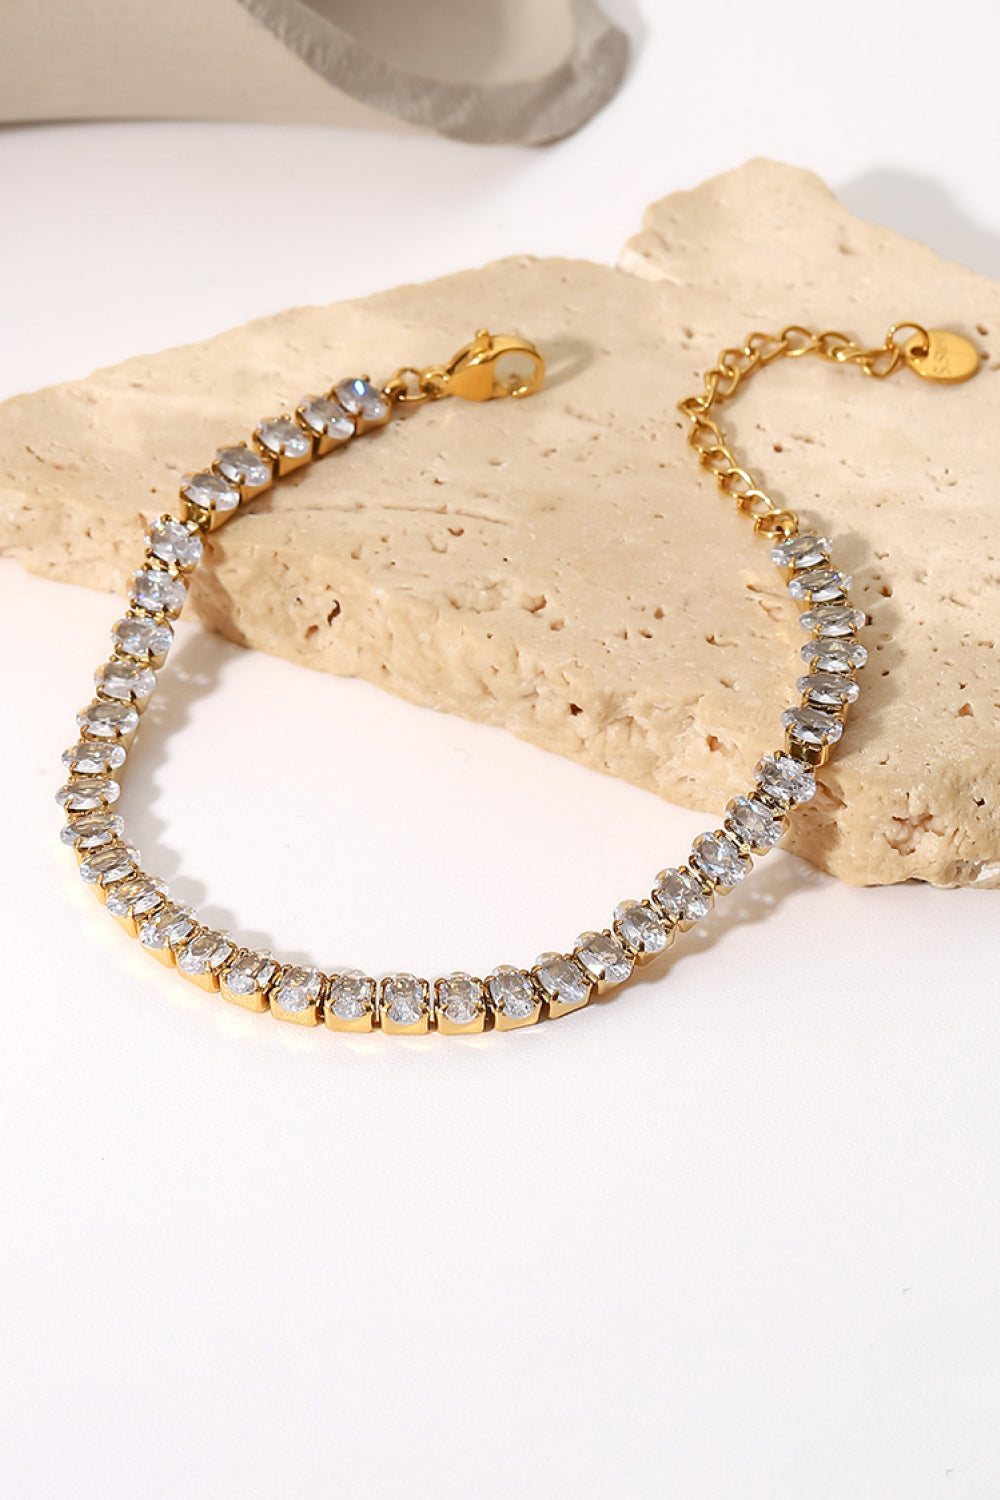 Inlaid Zircon 18K Gold Plated Bracelet - Gold / One Size - Women’s Jewelry - Bracelets - 1 - 2024